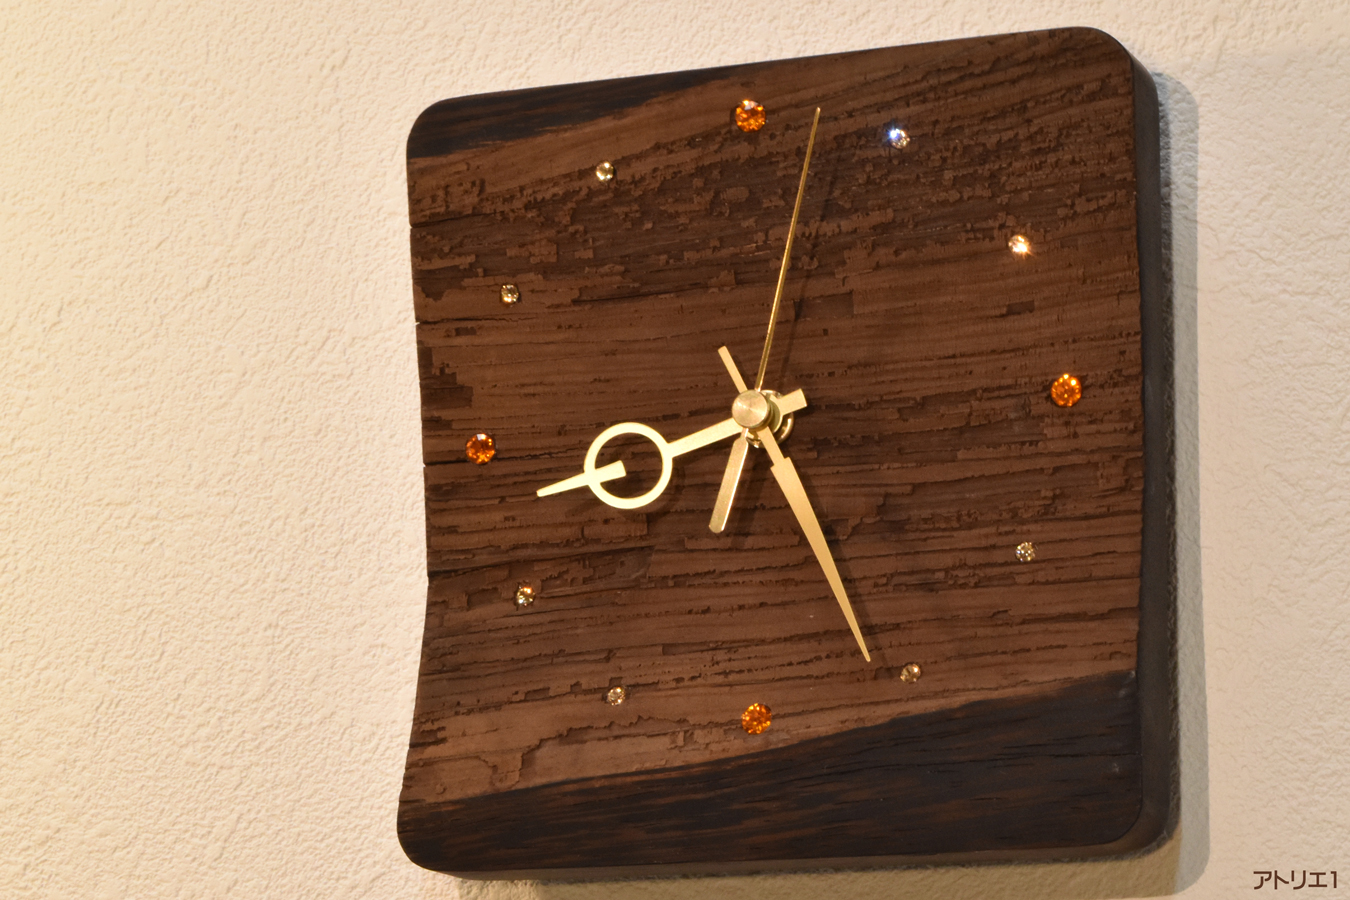 ウエンジの「アテ」の部分を夕暮れに見立てて時計にしました。